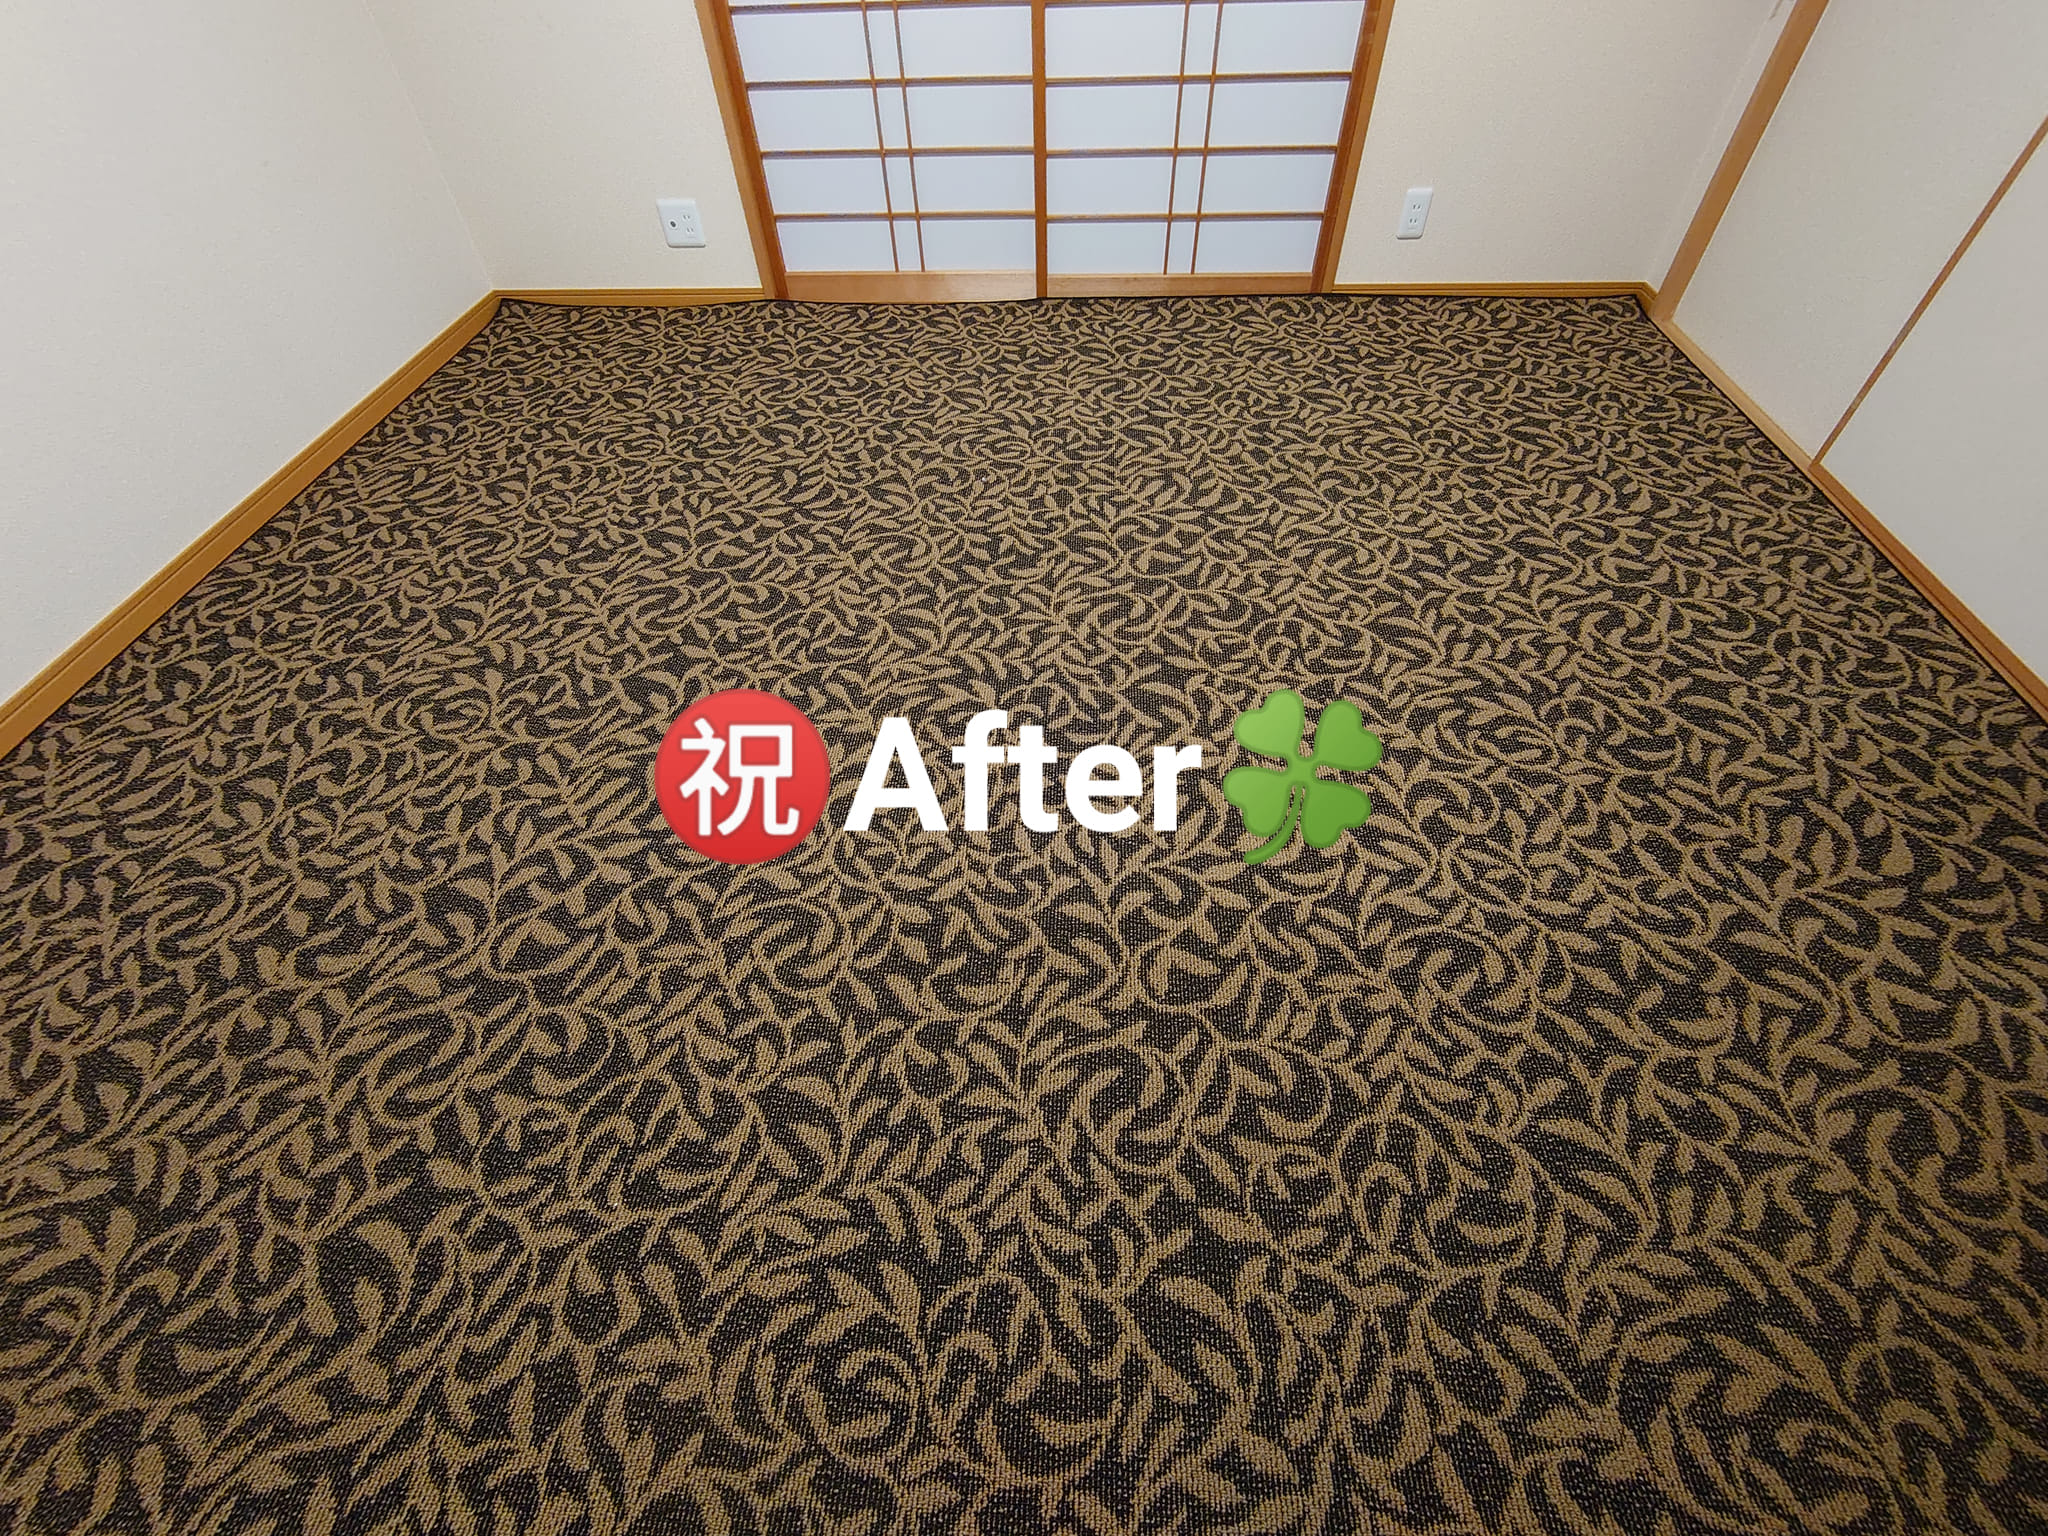 畳からフローリングに改装してサイズぴったりのカーペットを敷きたい！|安城市・碧南市・刈谷市でリフォーム・増改築するなら総和住宅